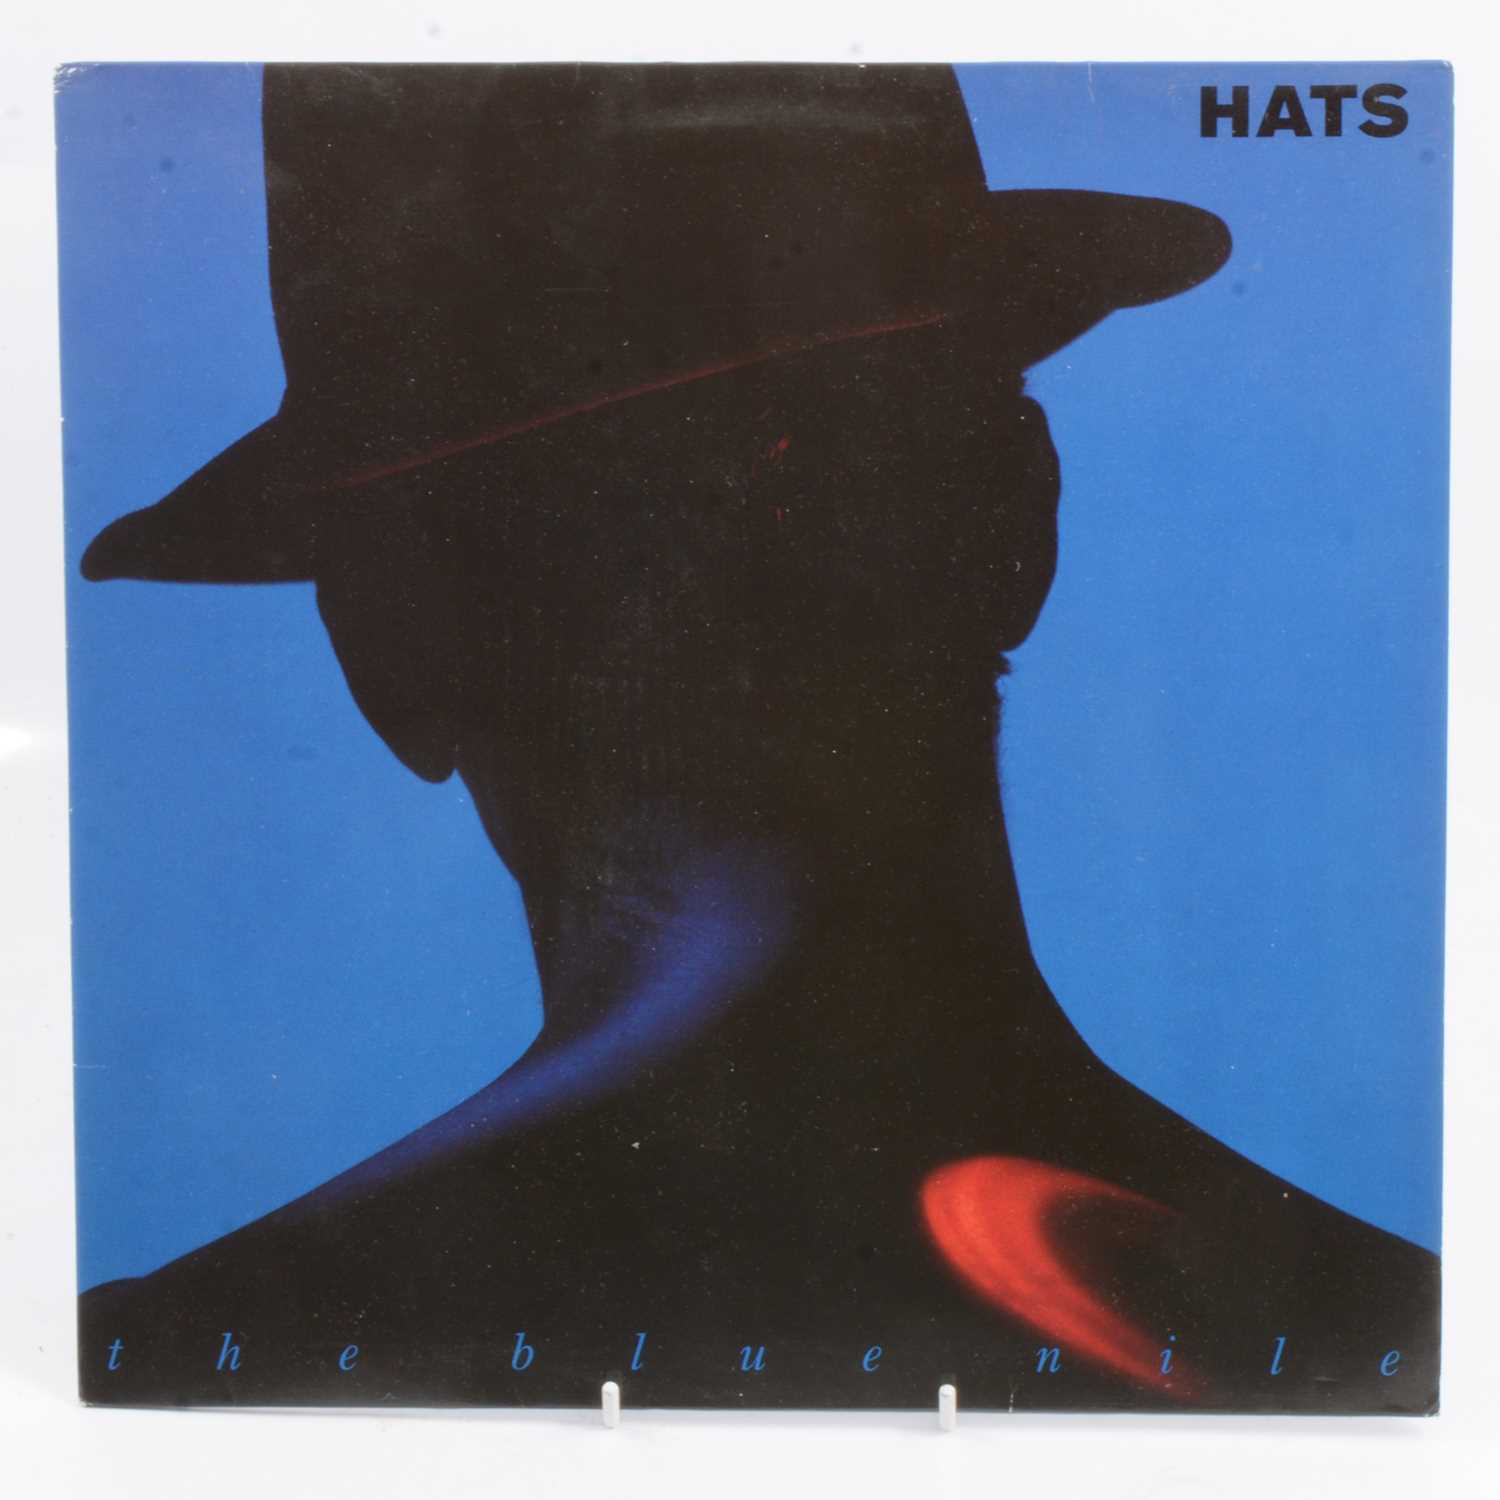 Lot 201 - The - Hats LP vinyl music